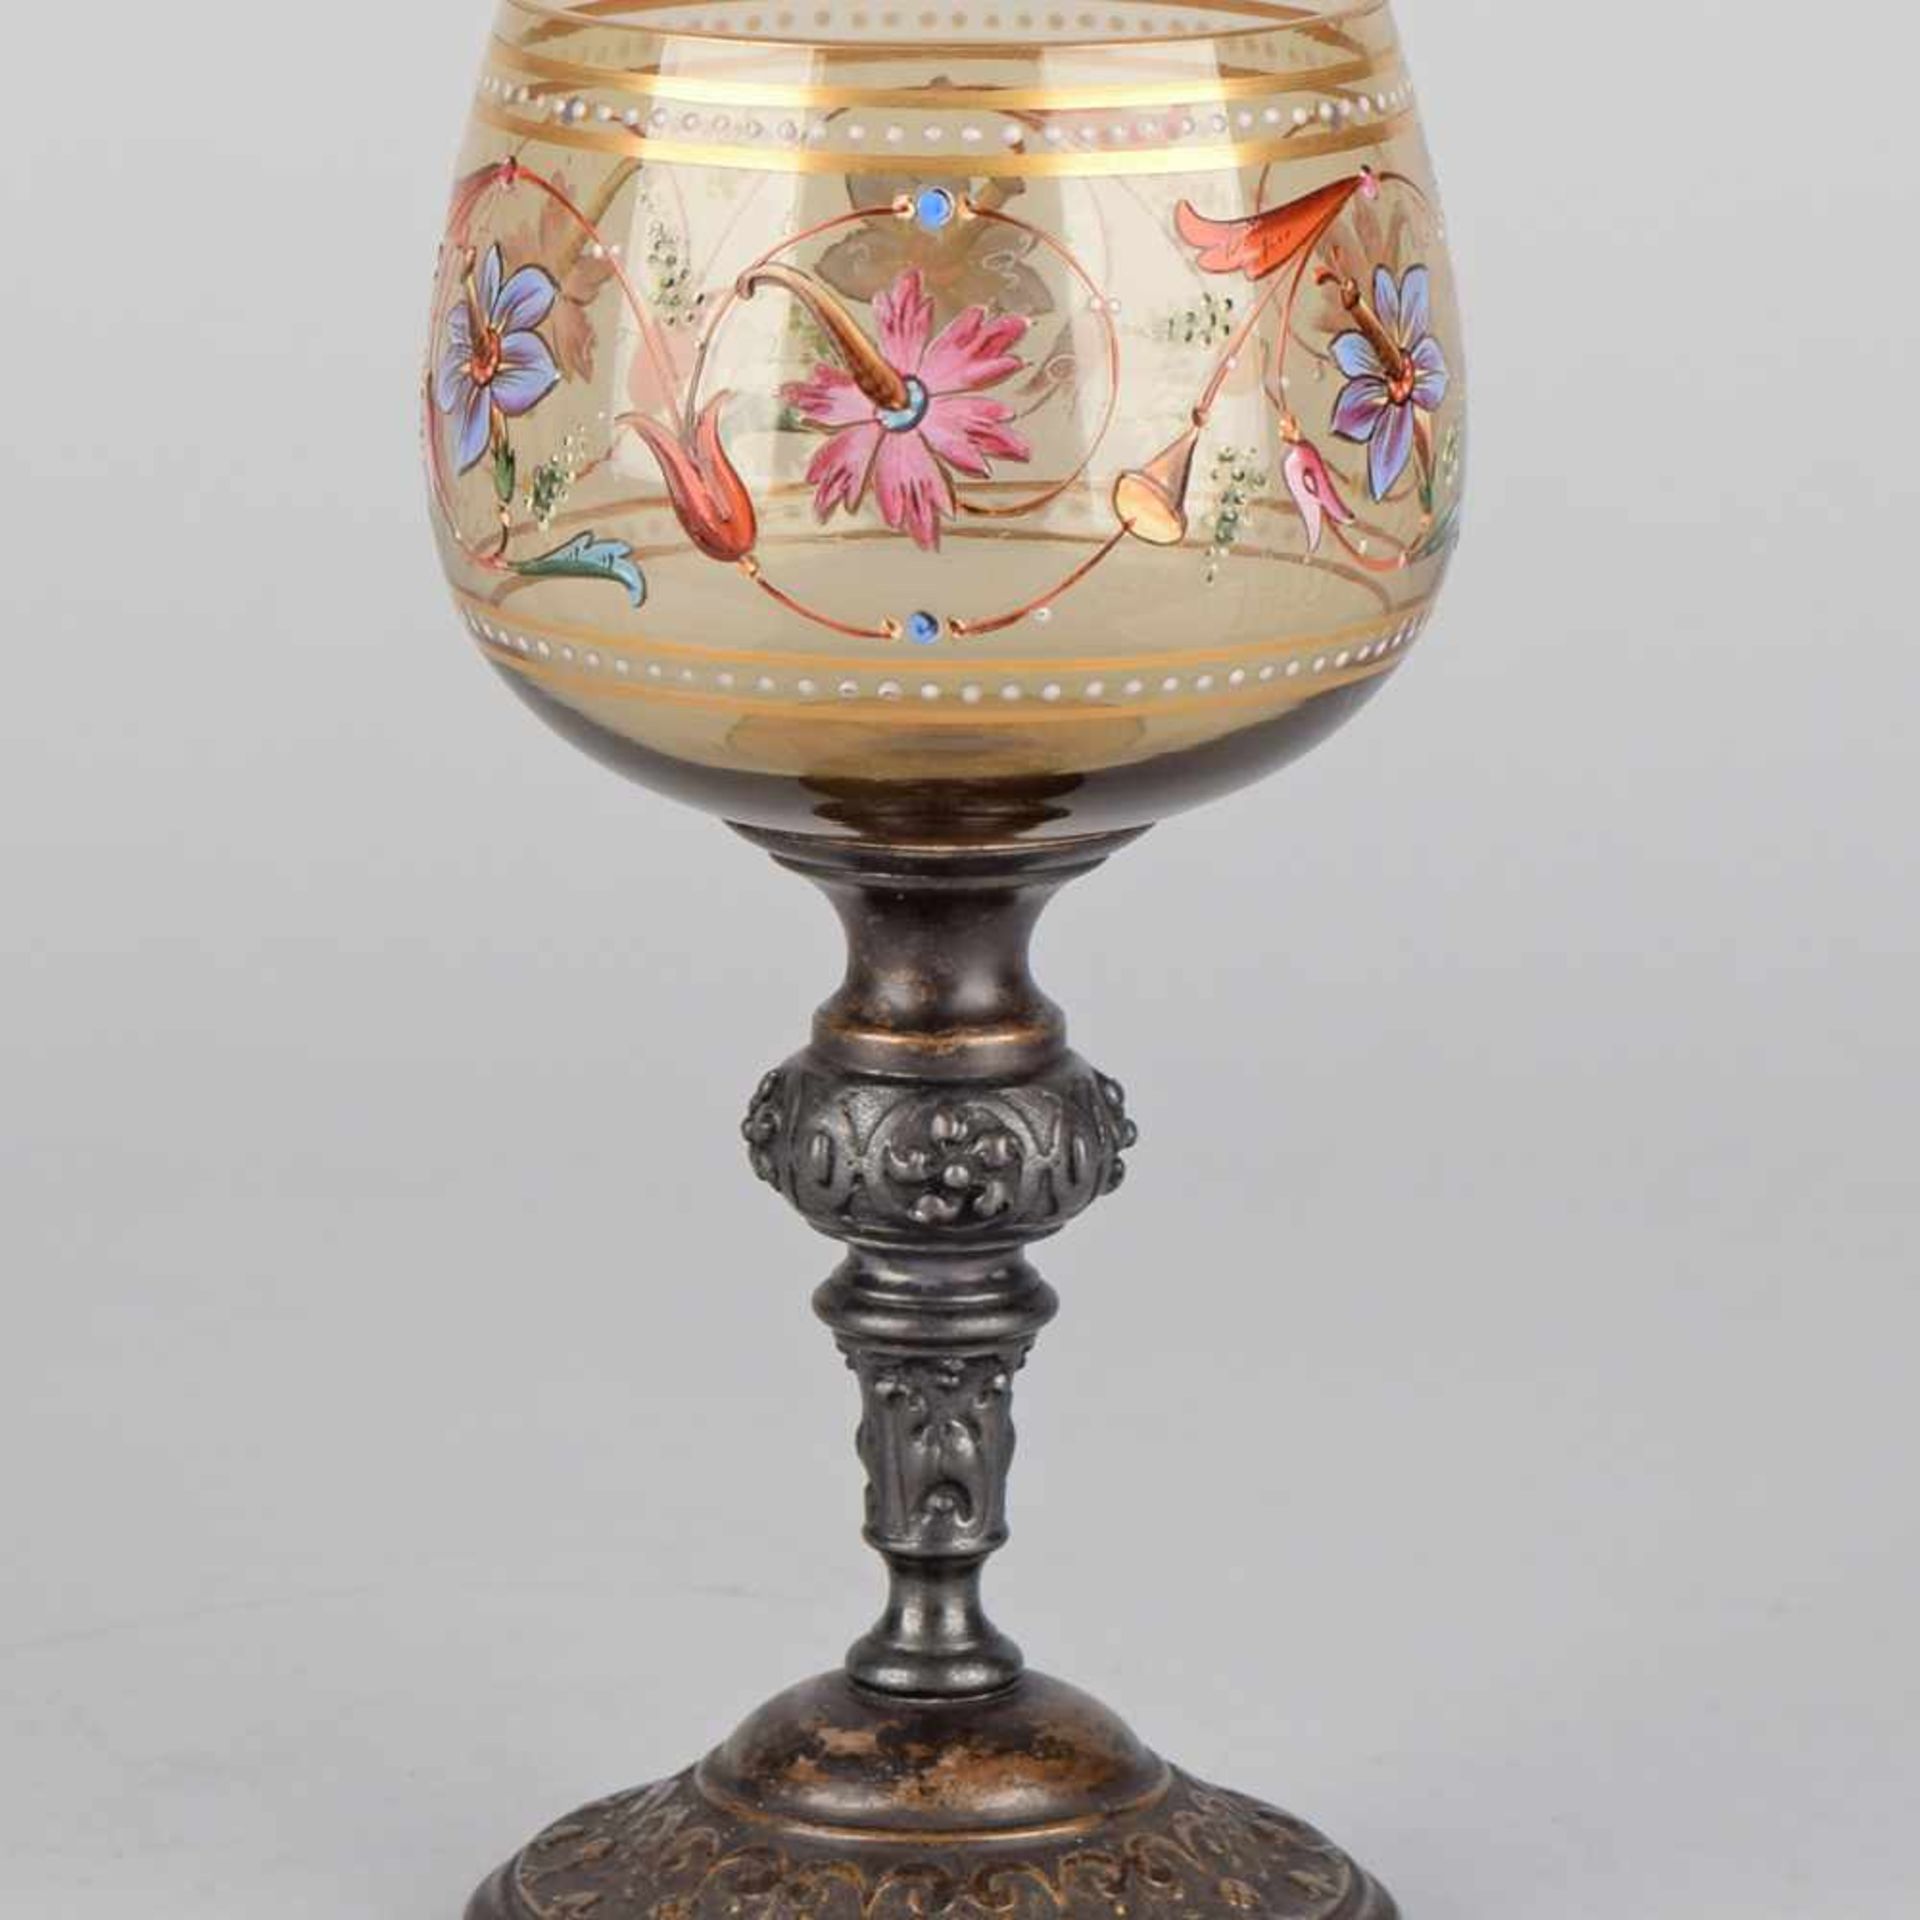 Historismus-Zierglas Stielglas mit kugeliger Kuppa in Braun-Grün, Blütenranke aufwendig von Hand